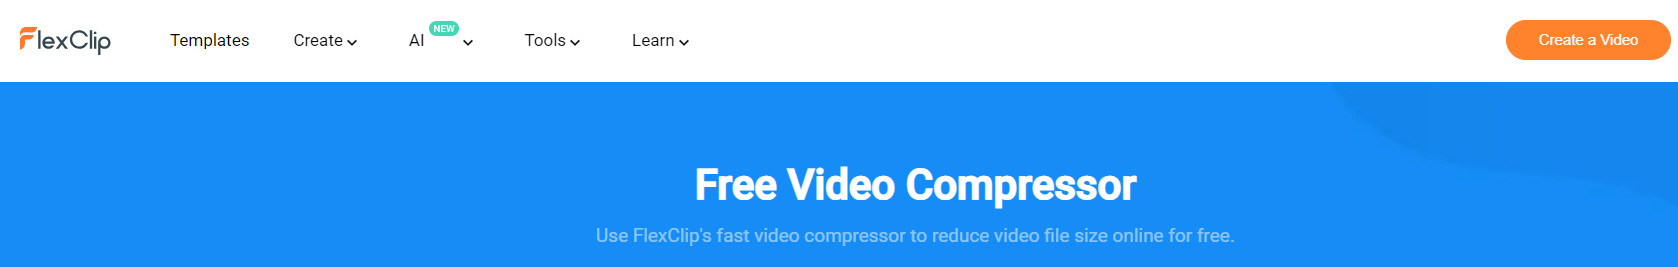 Best video compressor FlexClip